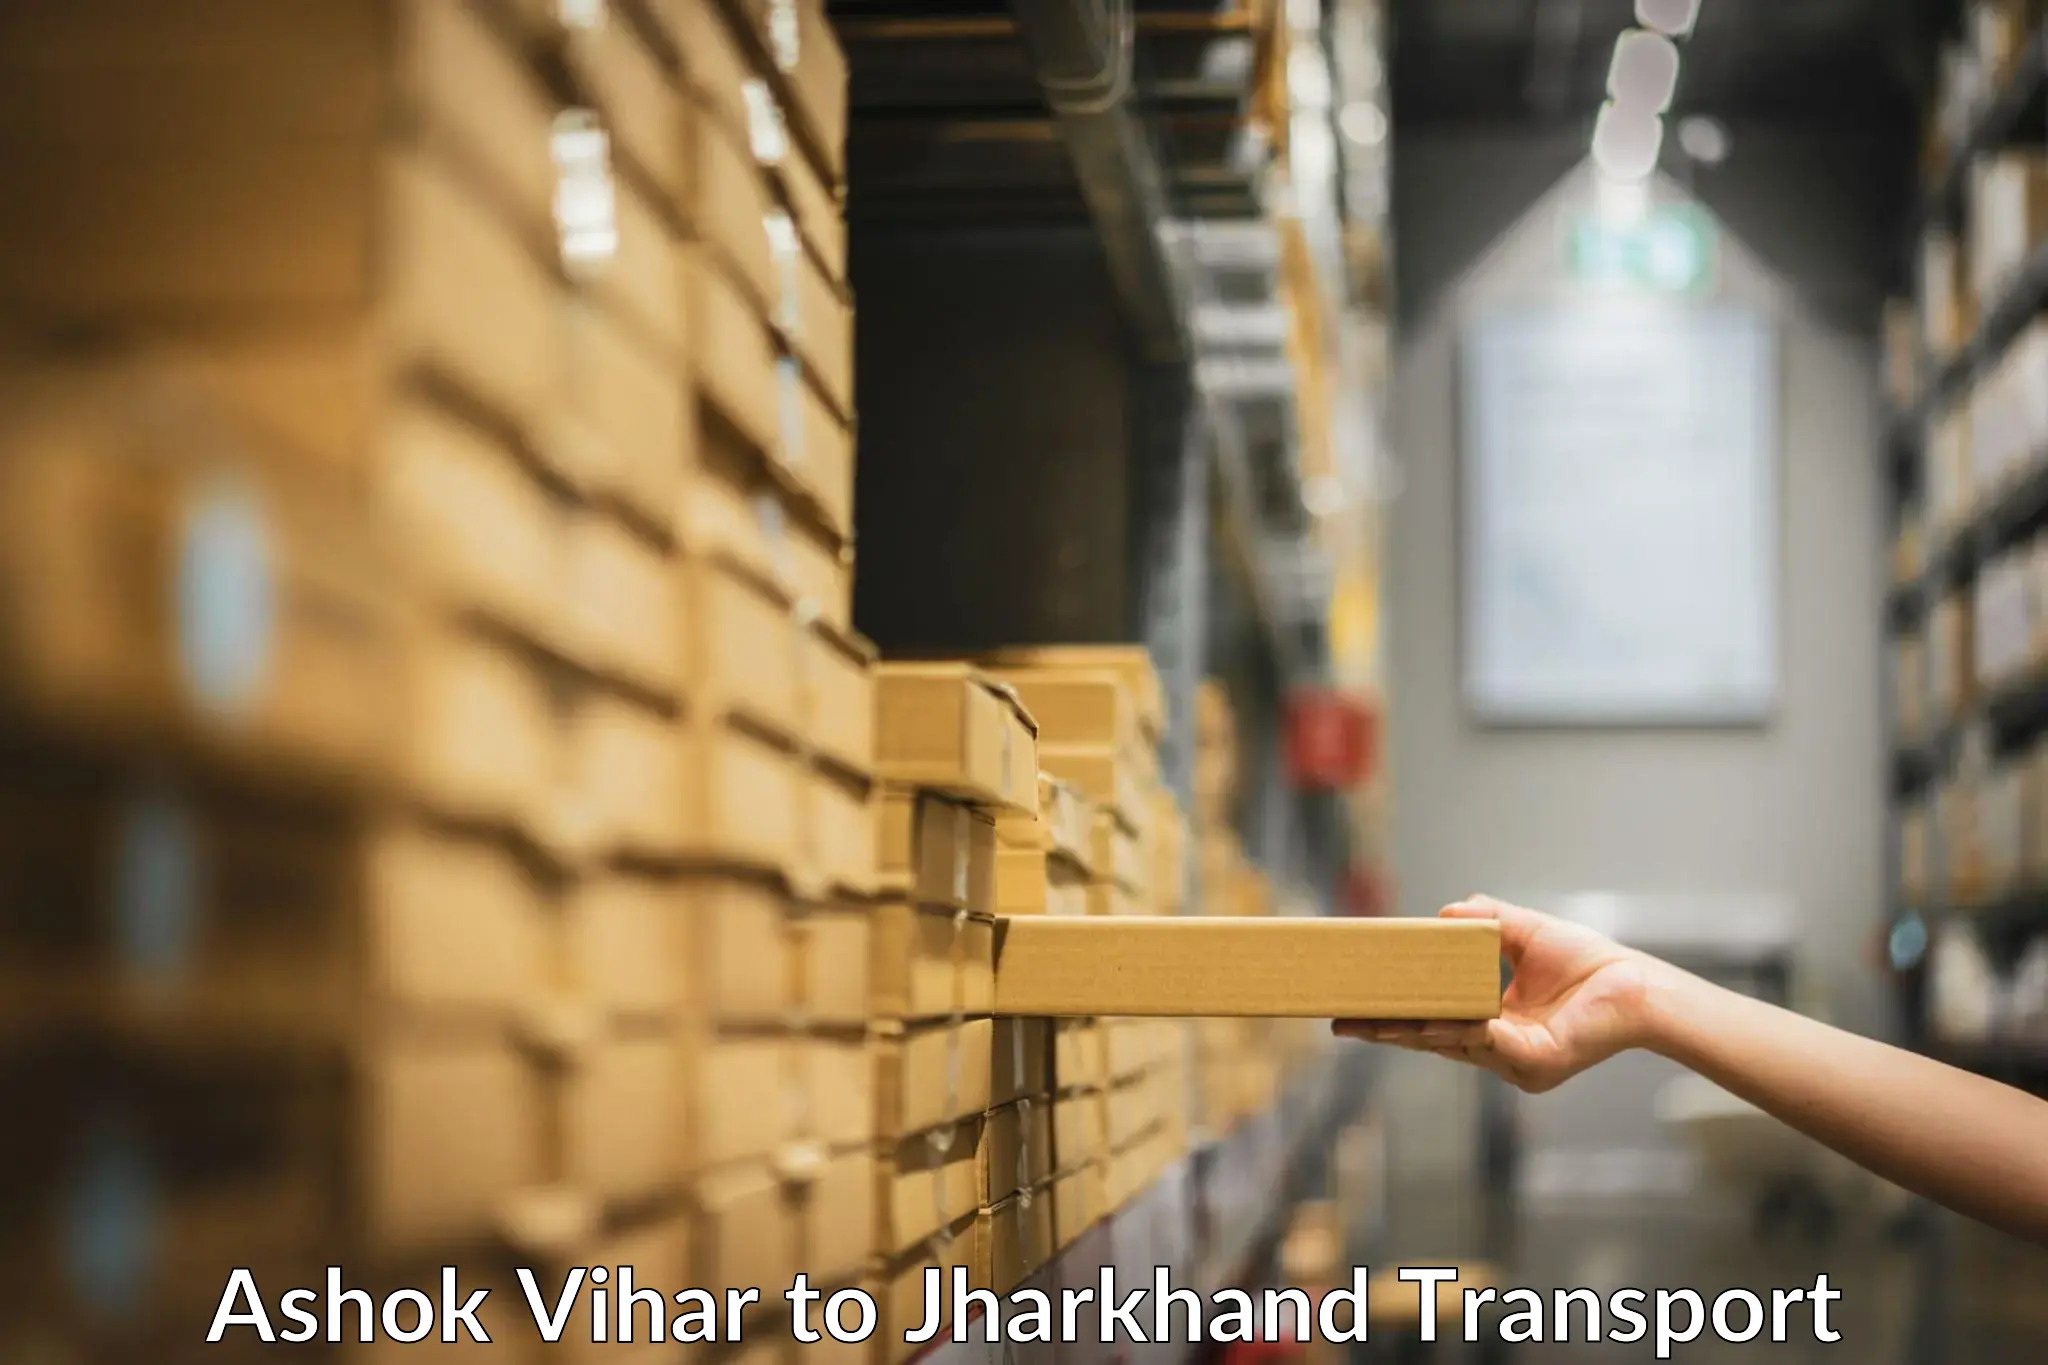 Goods delivery service Ashok Vihar to Bokaro